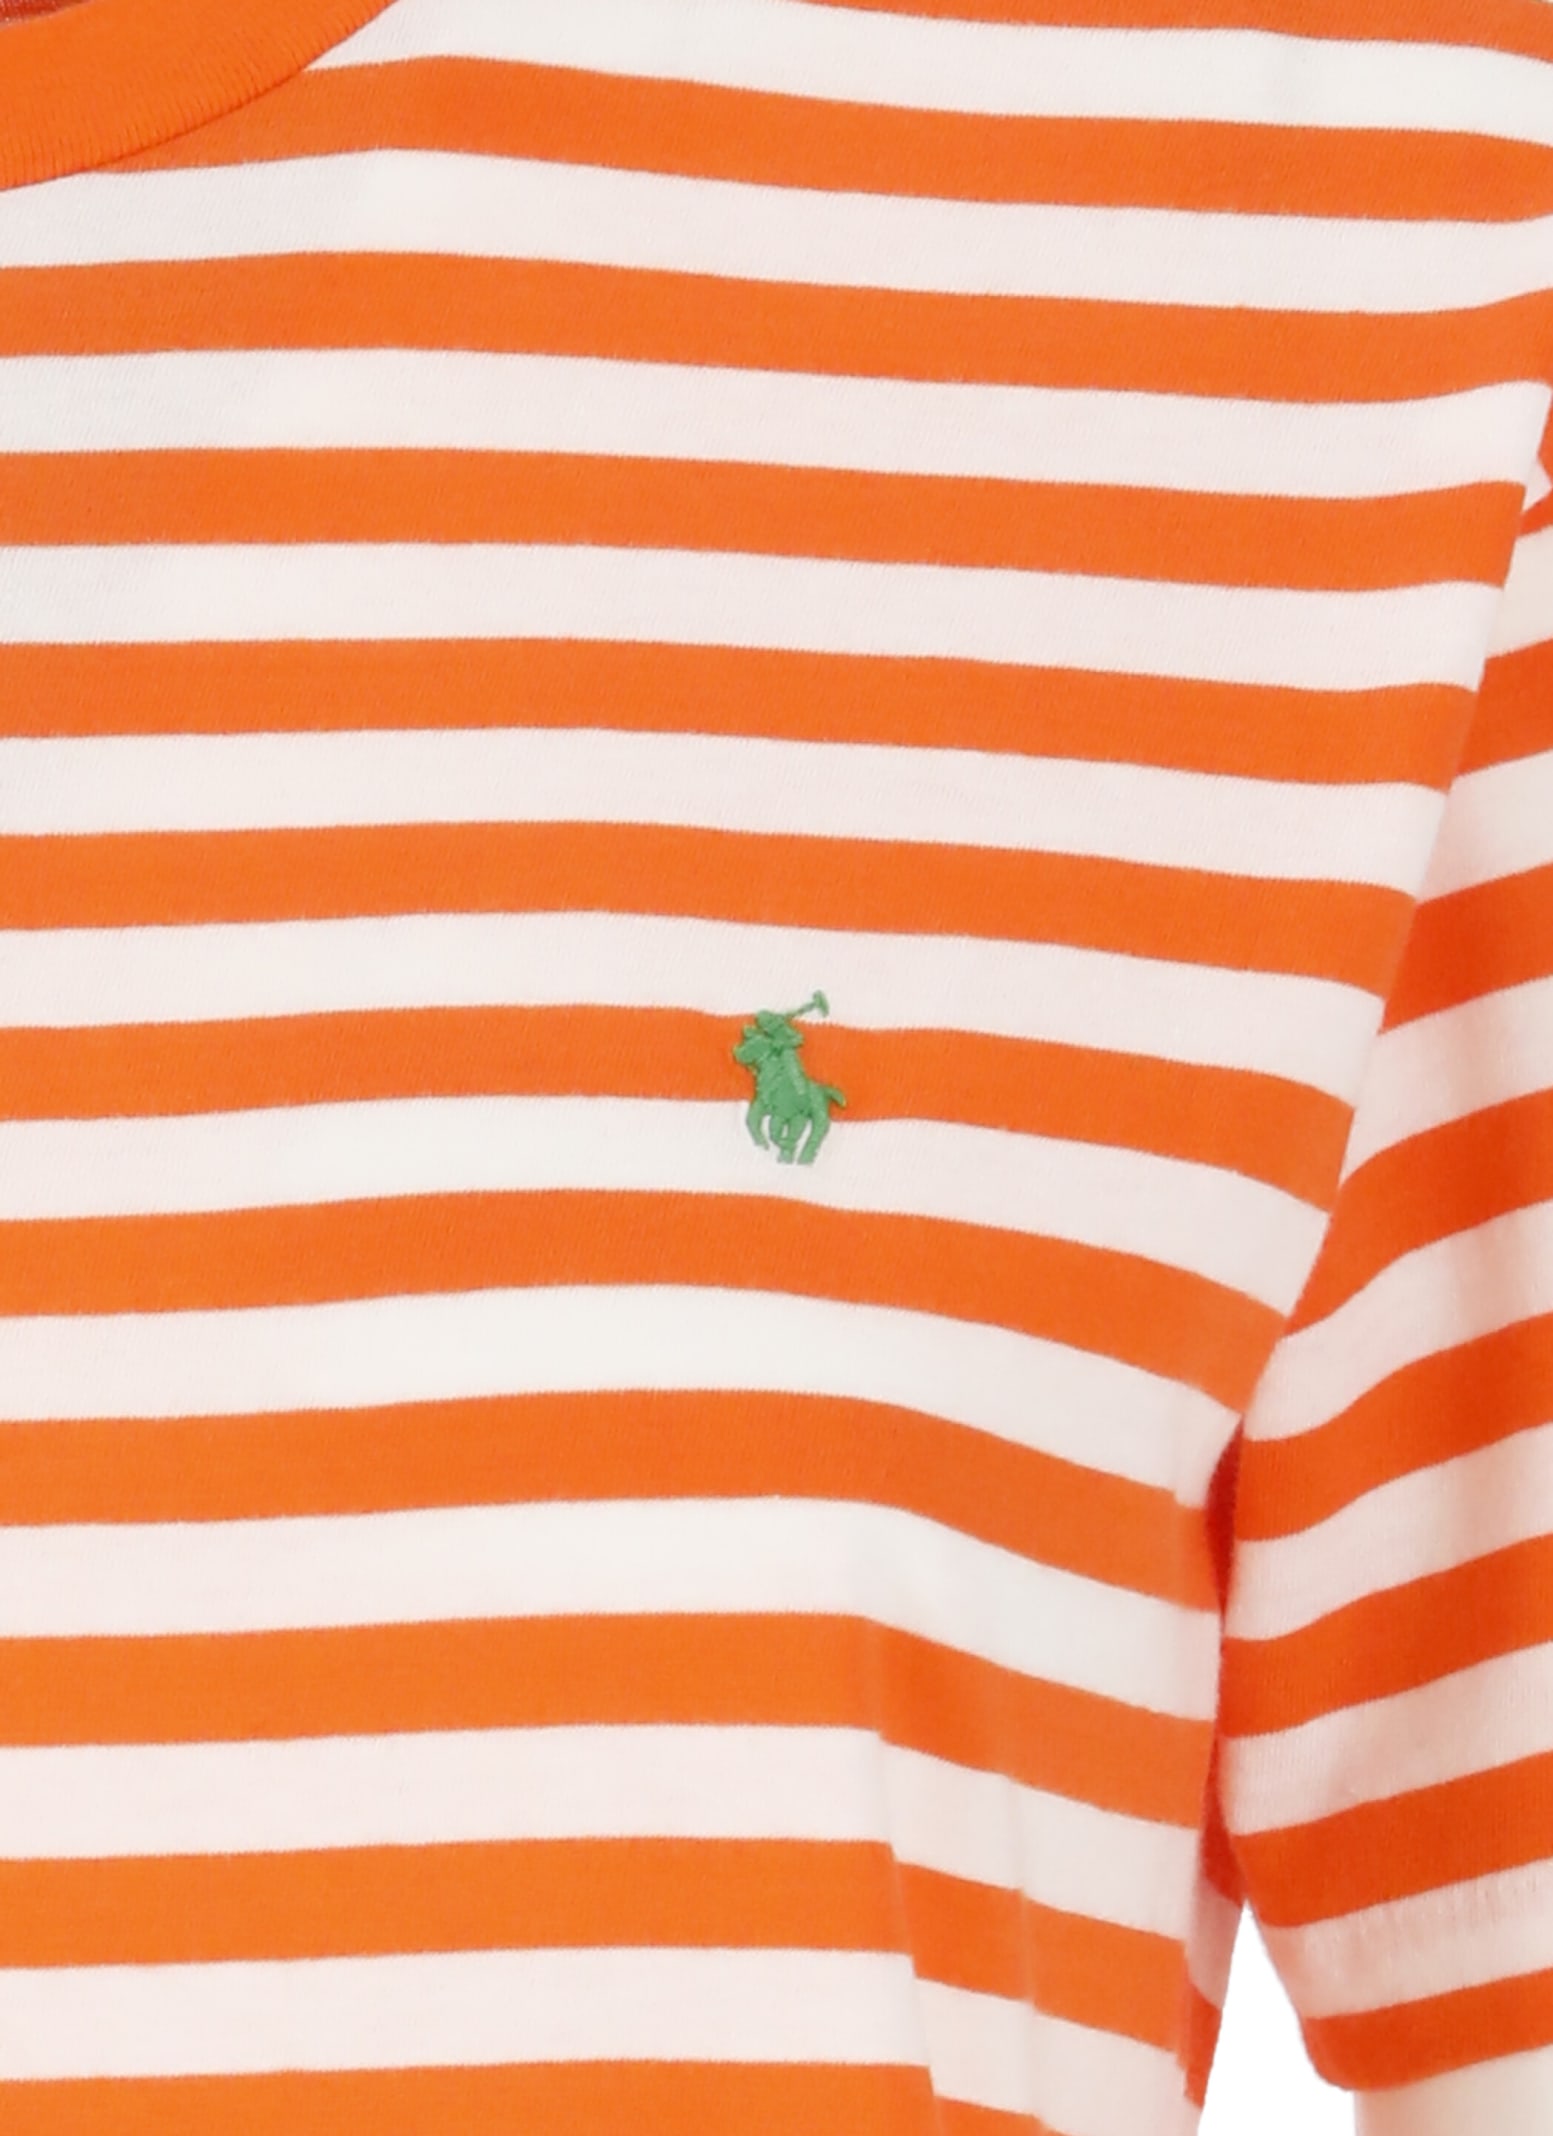 Shop Ralph Lauren Pony T-shirt In Orange